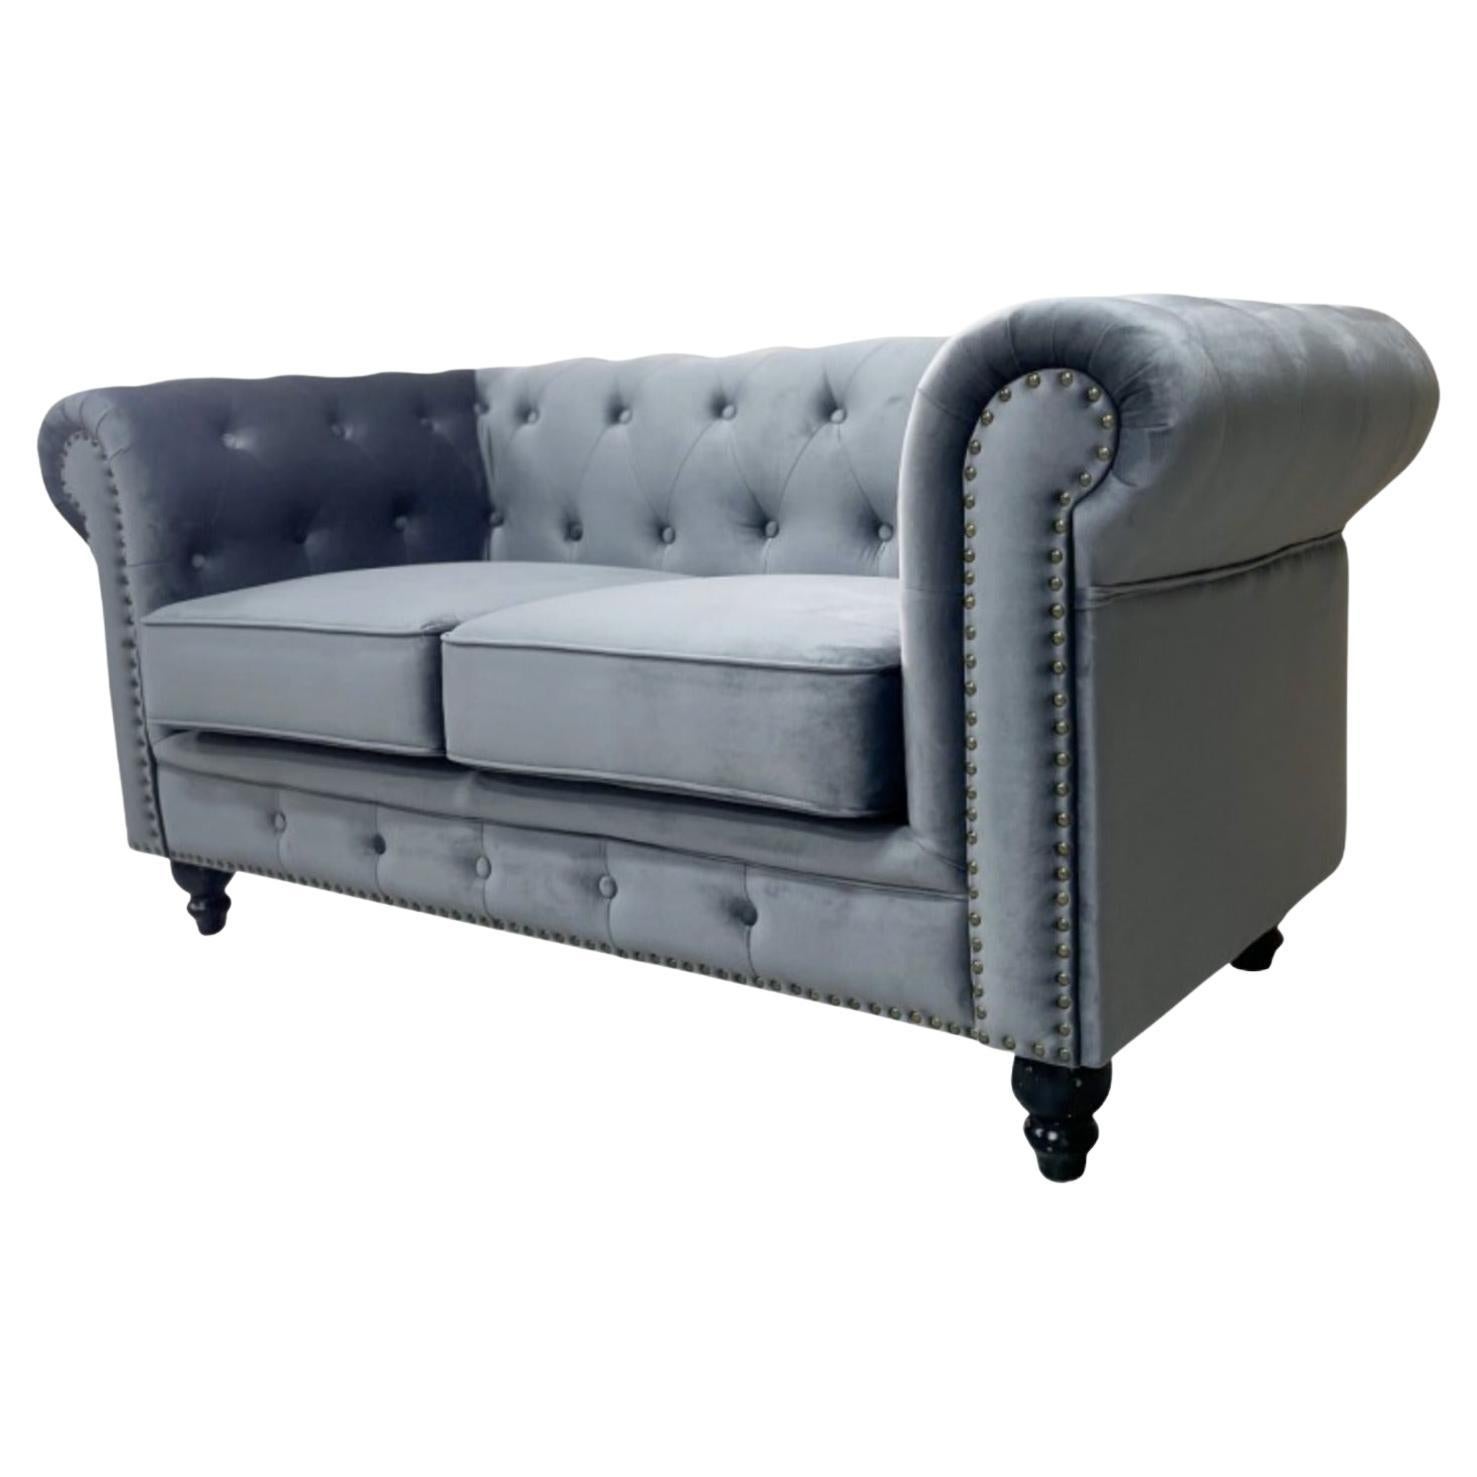 New Chester Premium 2 Seater Sofa, Gray Velvet Upholstery For Sale